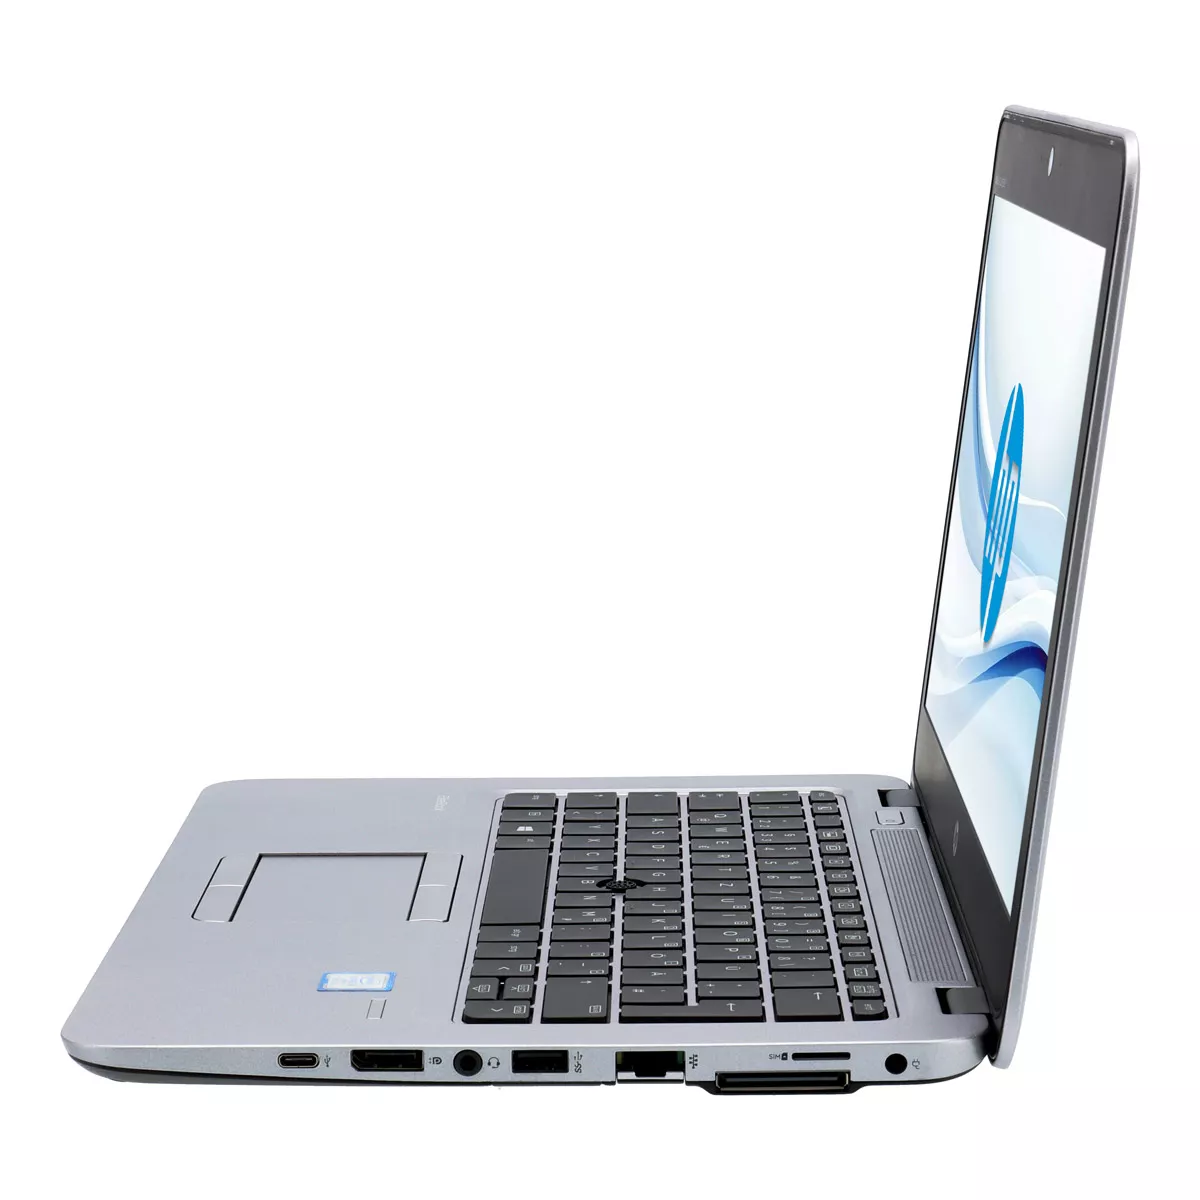 HP EliteBook 820 G4 Core i5 7300U Full-HD 240 GB M.2 SSD Webcam A